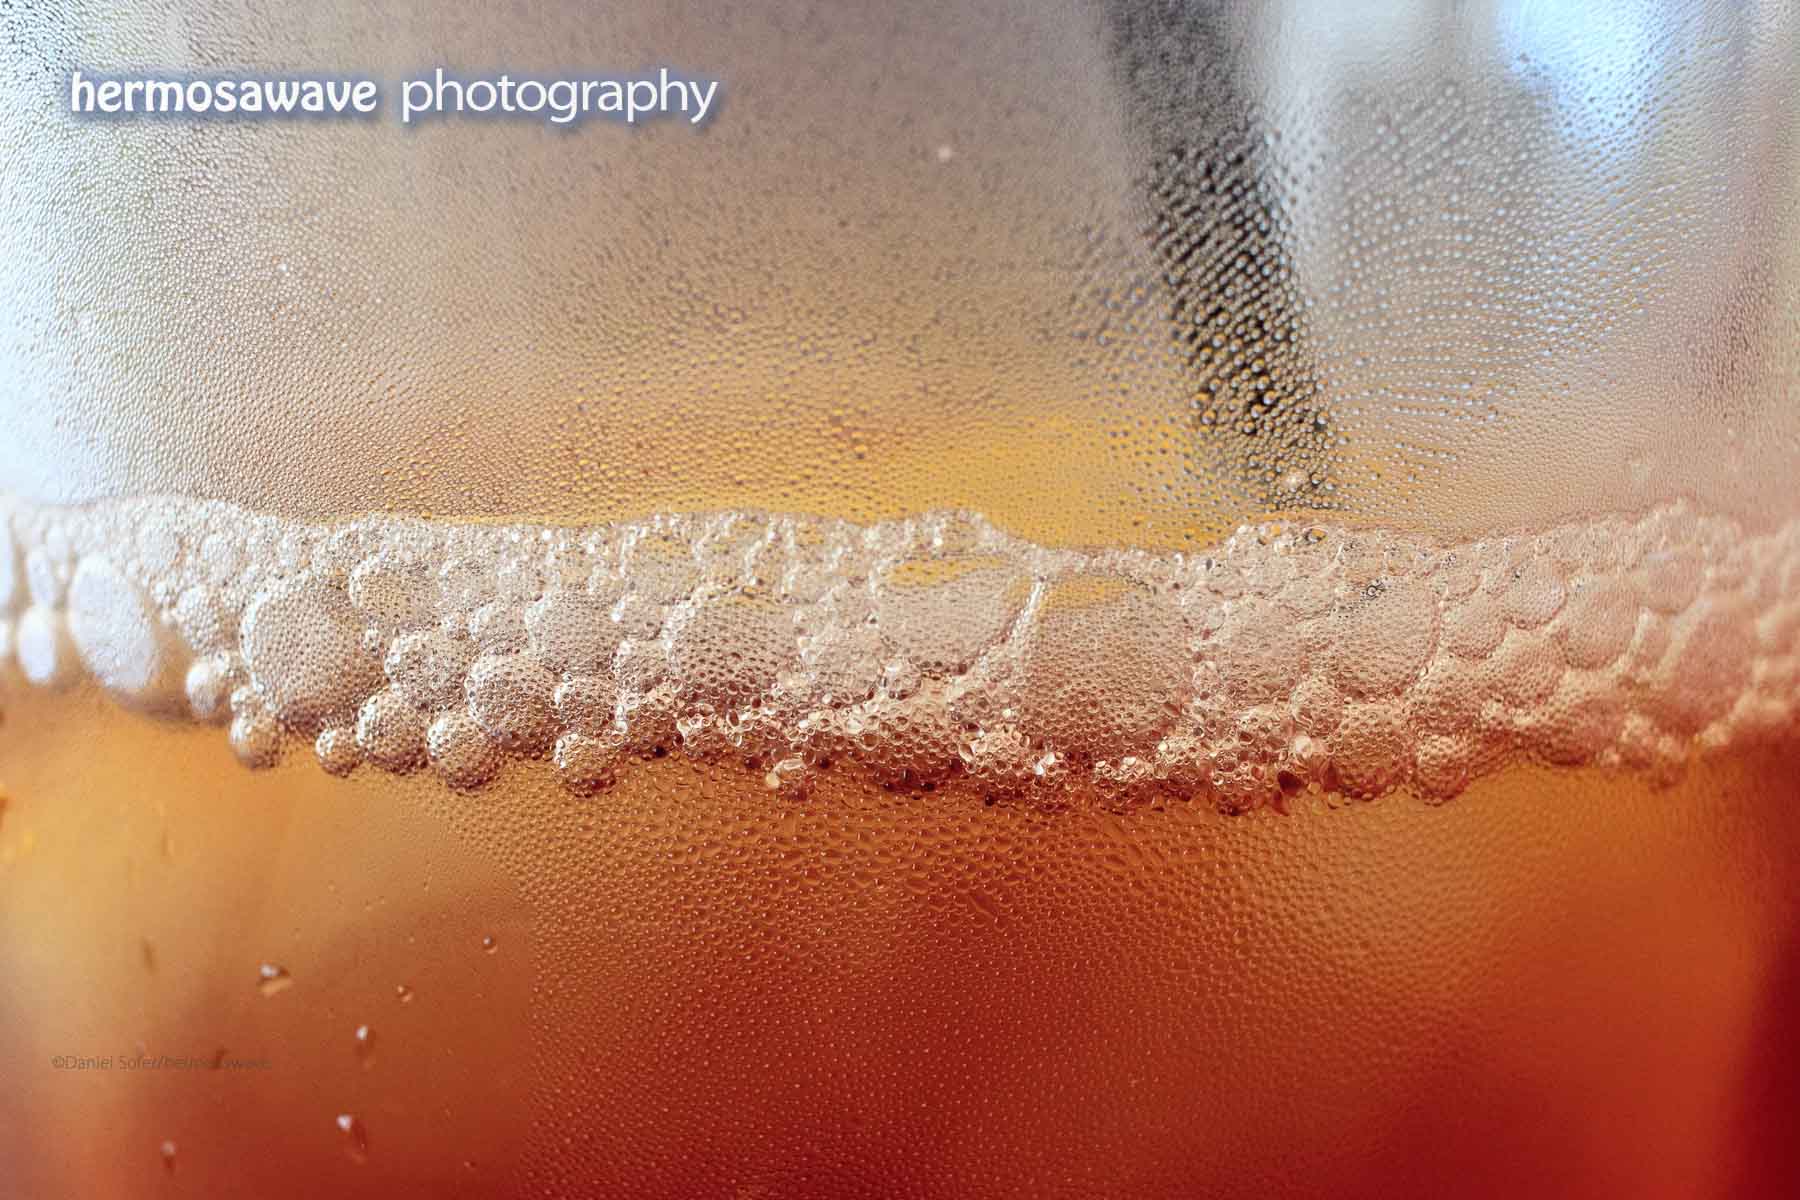 Condensation